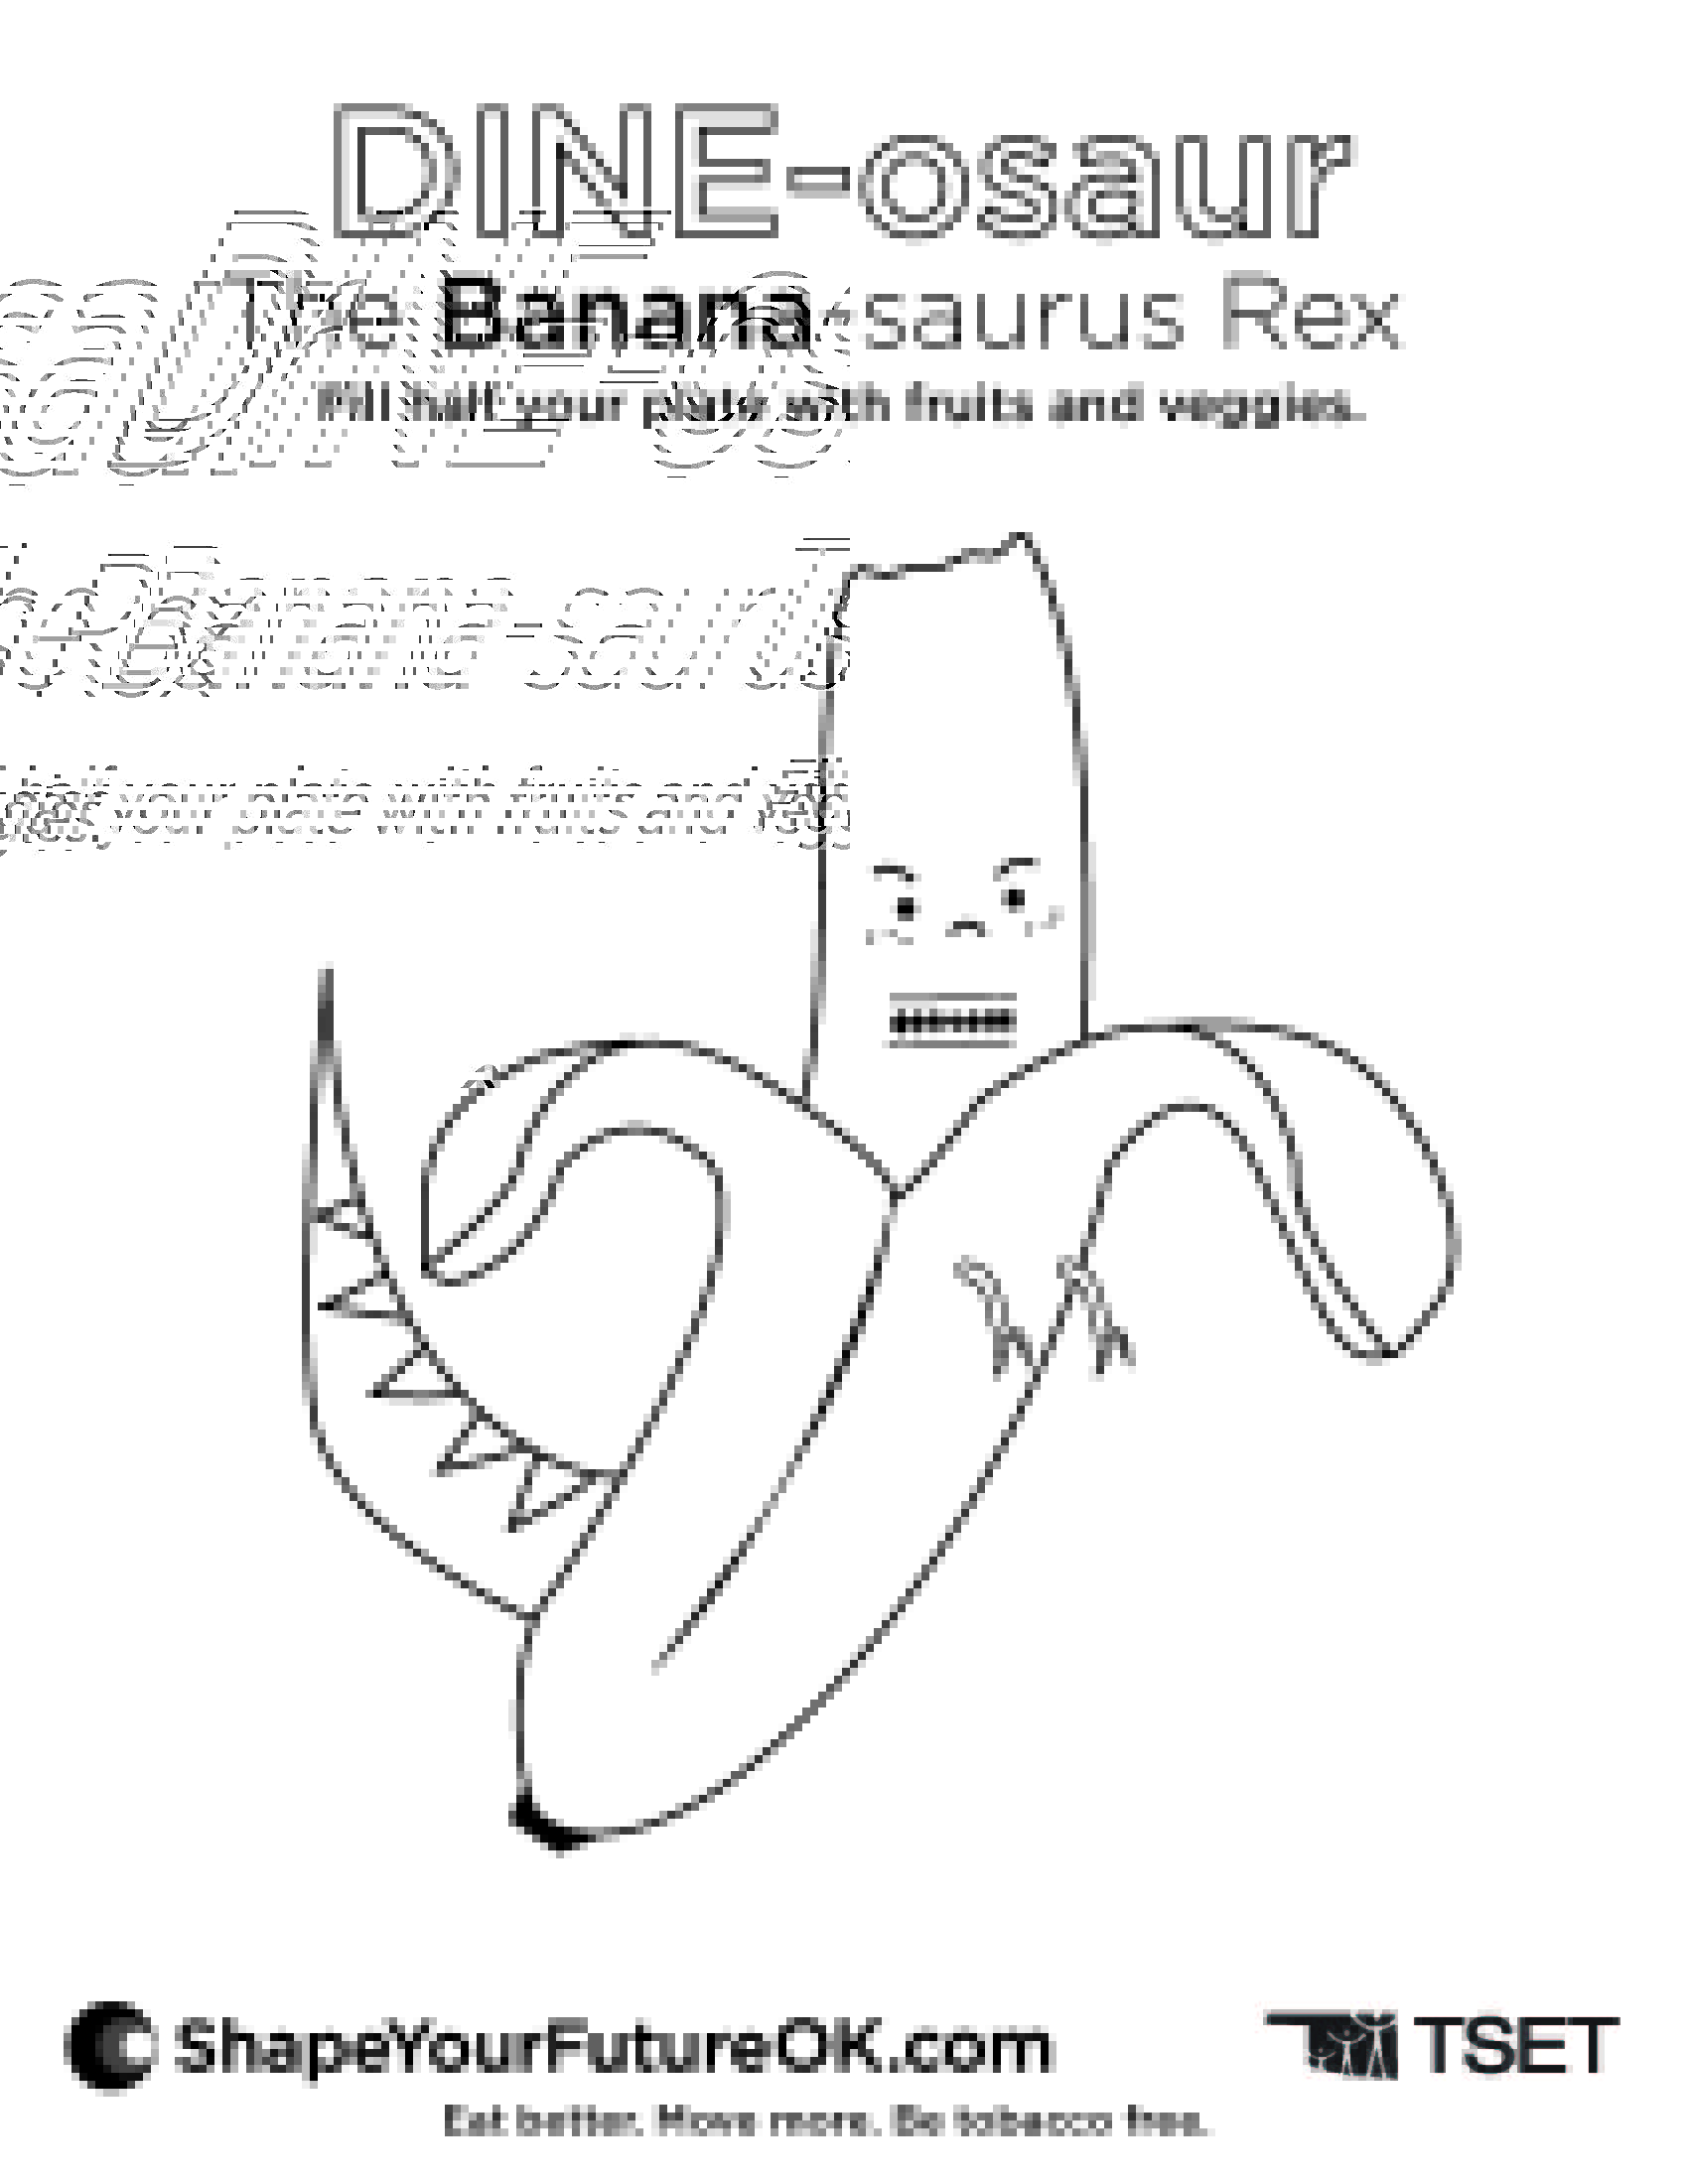 Banana-saurus Rex Coloring Page Download